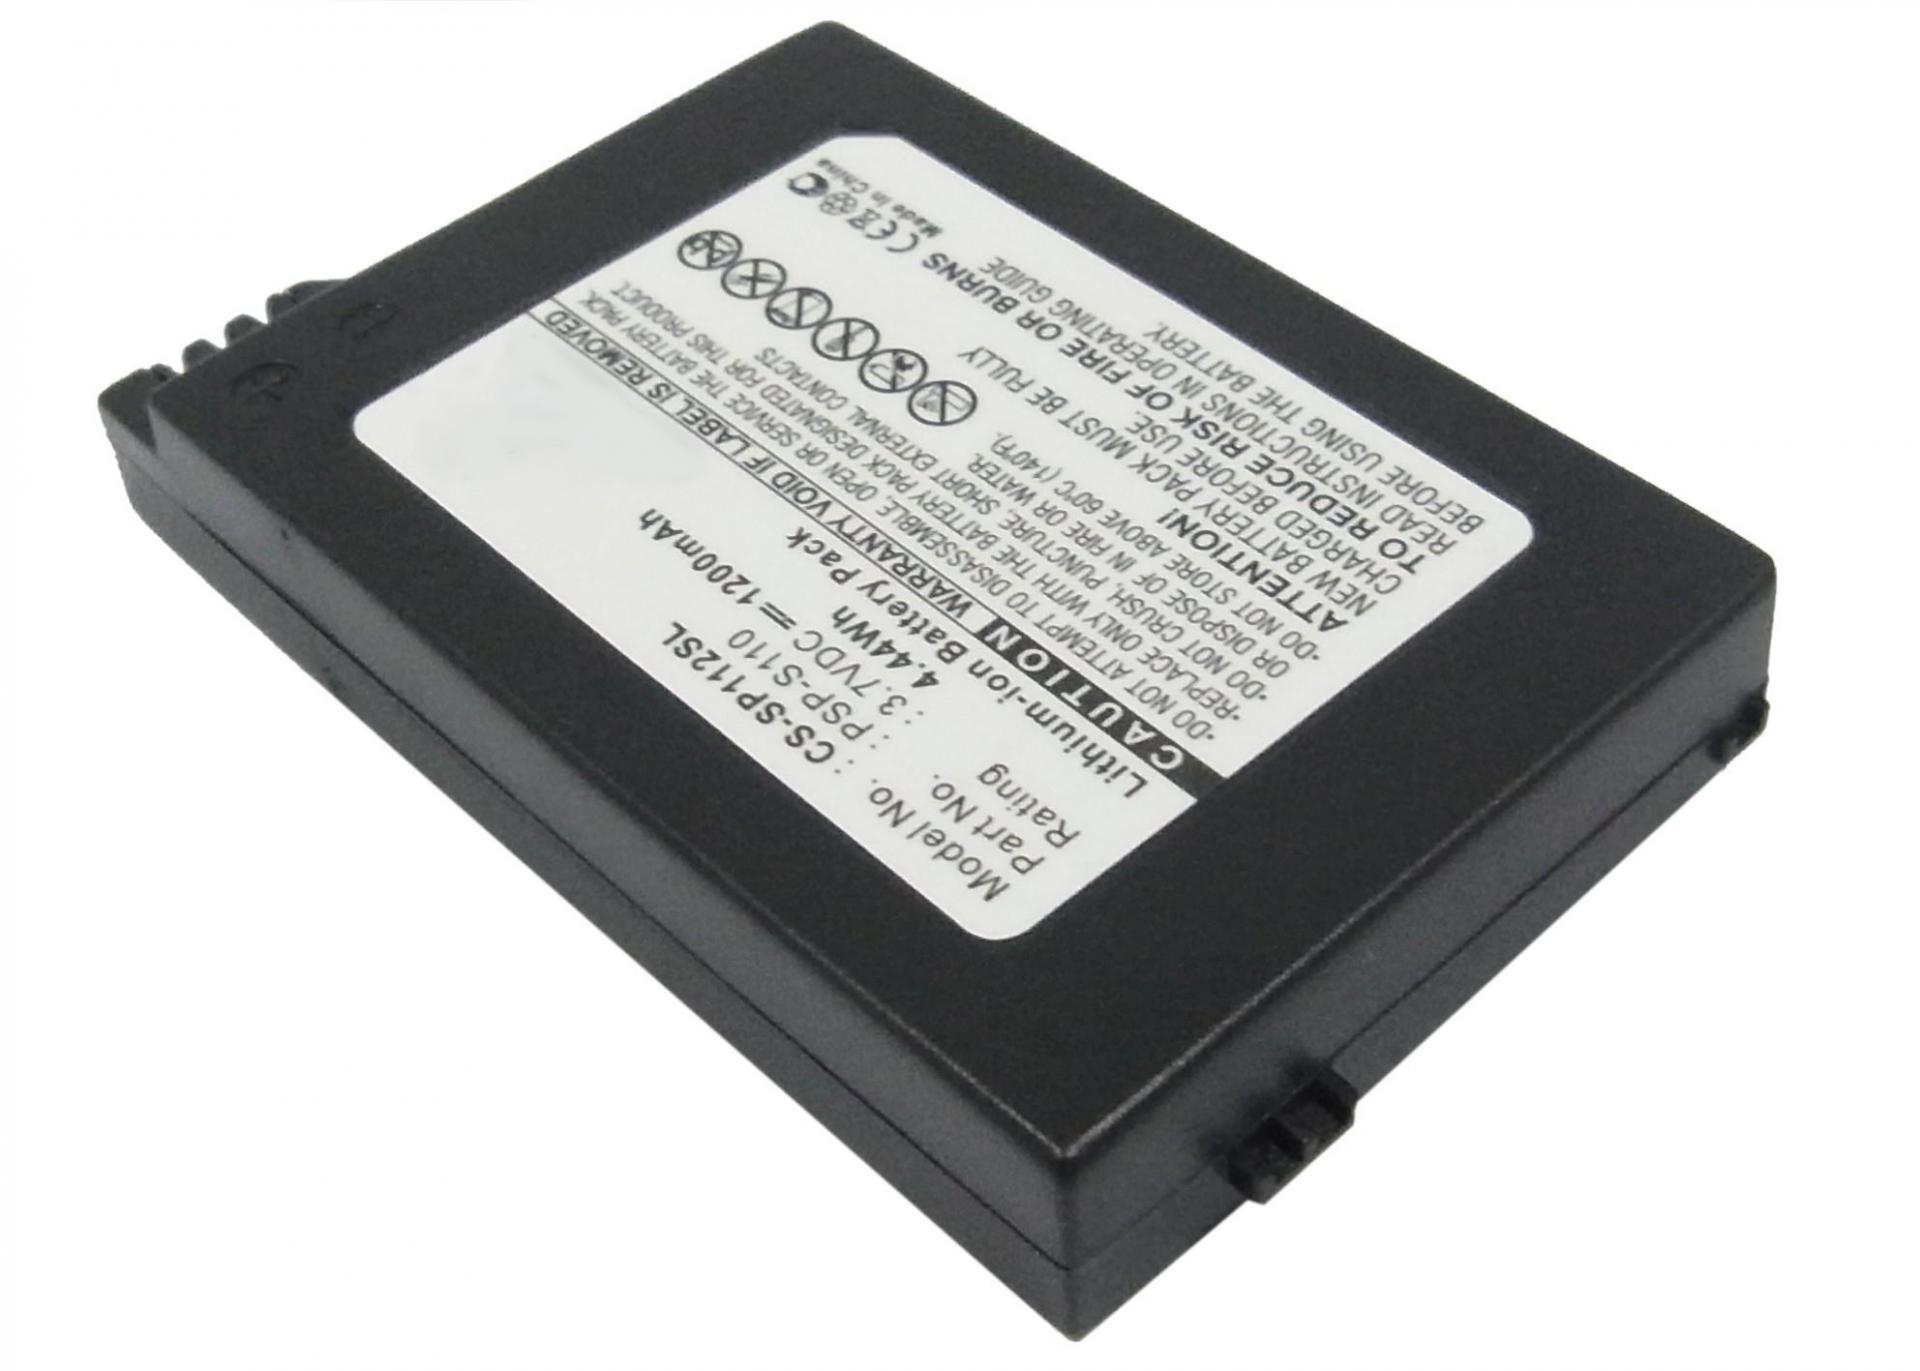 3.7V 1200mAh Battery PSP-S110 for PSP 2th,PSP-2000,PSP-3000,PSP-3004,Silm,PSP-3001,PSP-3008 Lithium Ion Battery Pack